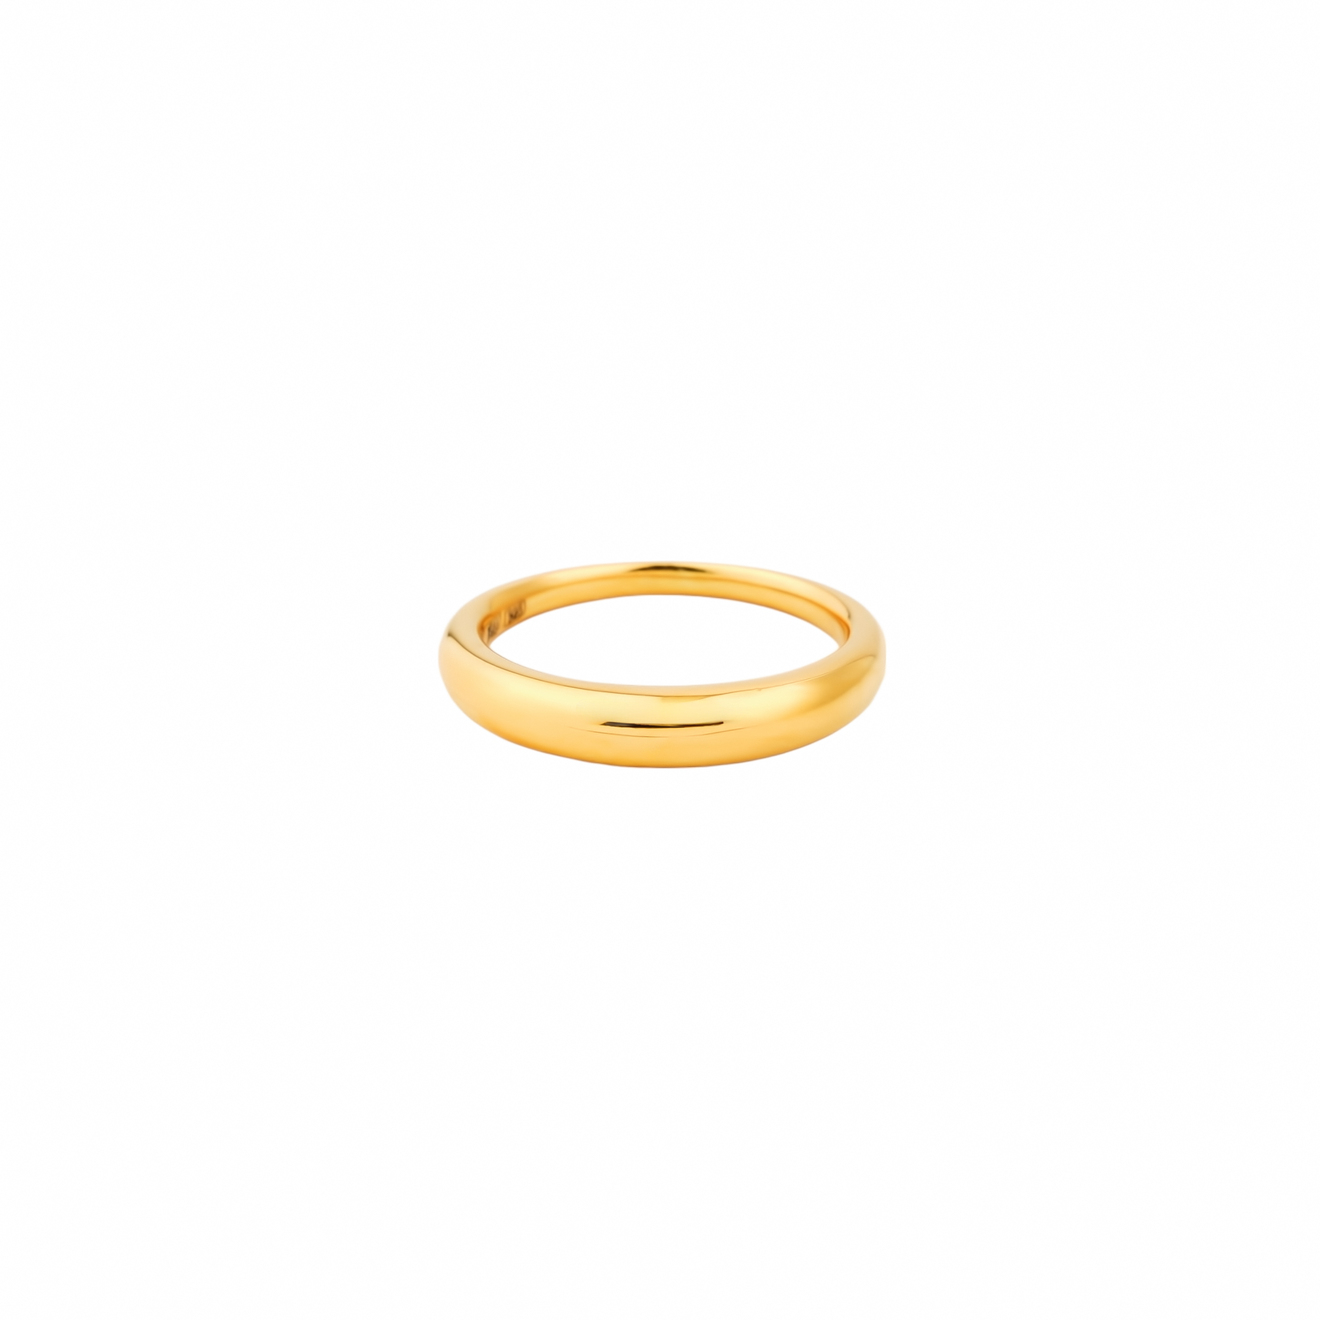 NÁNA Позолоченное кольцо ГЛАДЬ из серебра poche позолоченное кольцо из серебра с овальной вставкой из желтой эмали